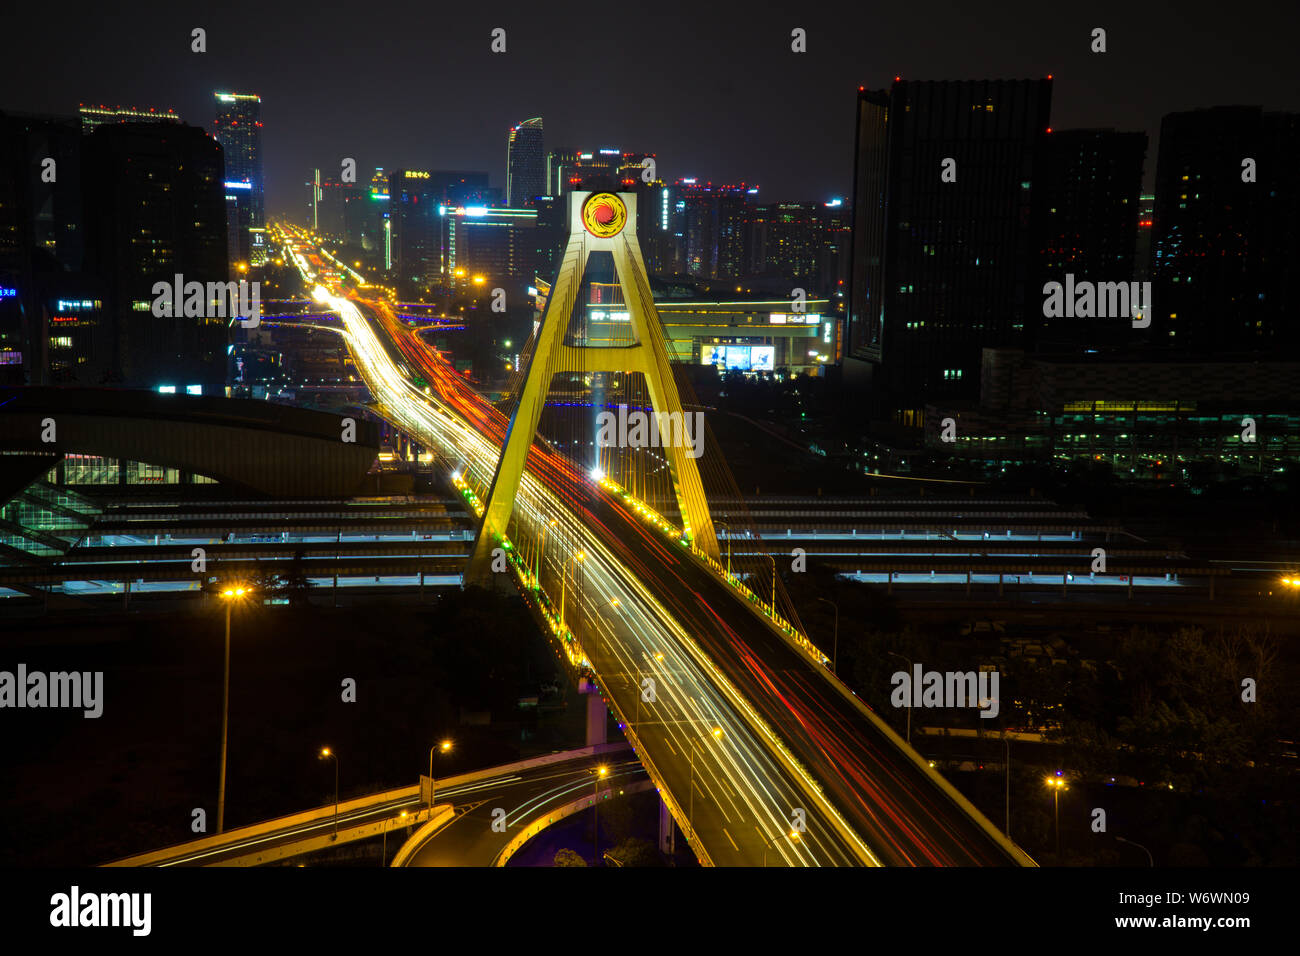 Obturador lento capturando tráfico en otra noche de Chengdu Foto de stock